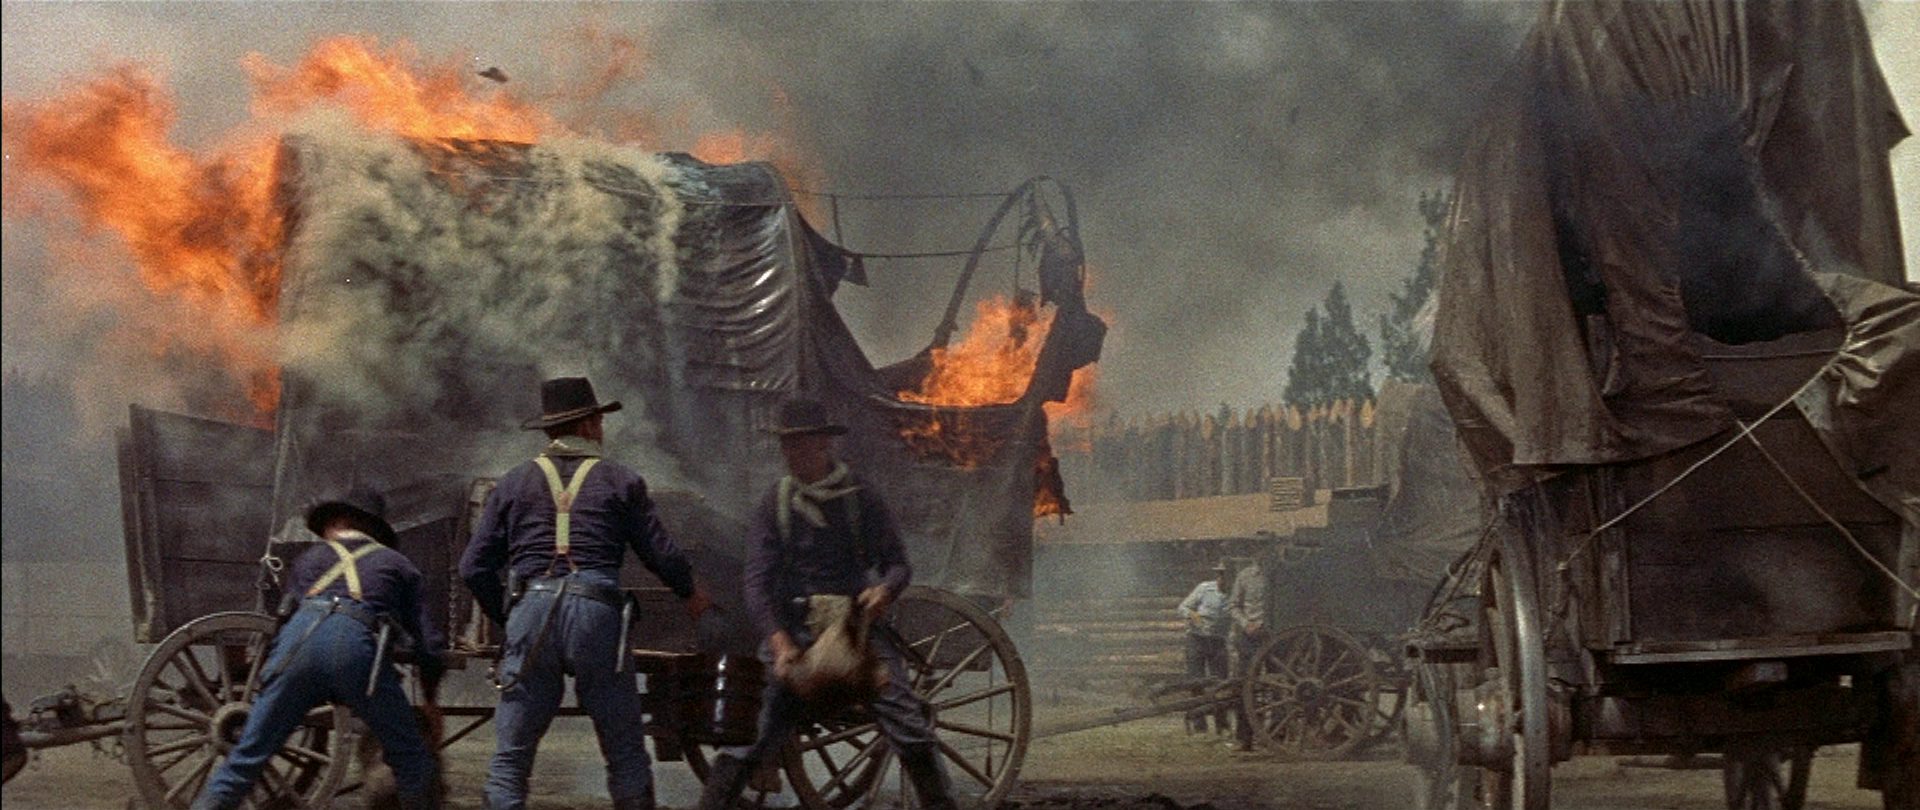 Drei Kavalleristen vor einem brennenden Planwagen in einem Fort.